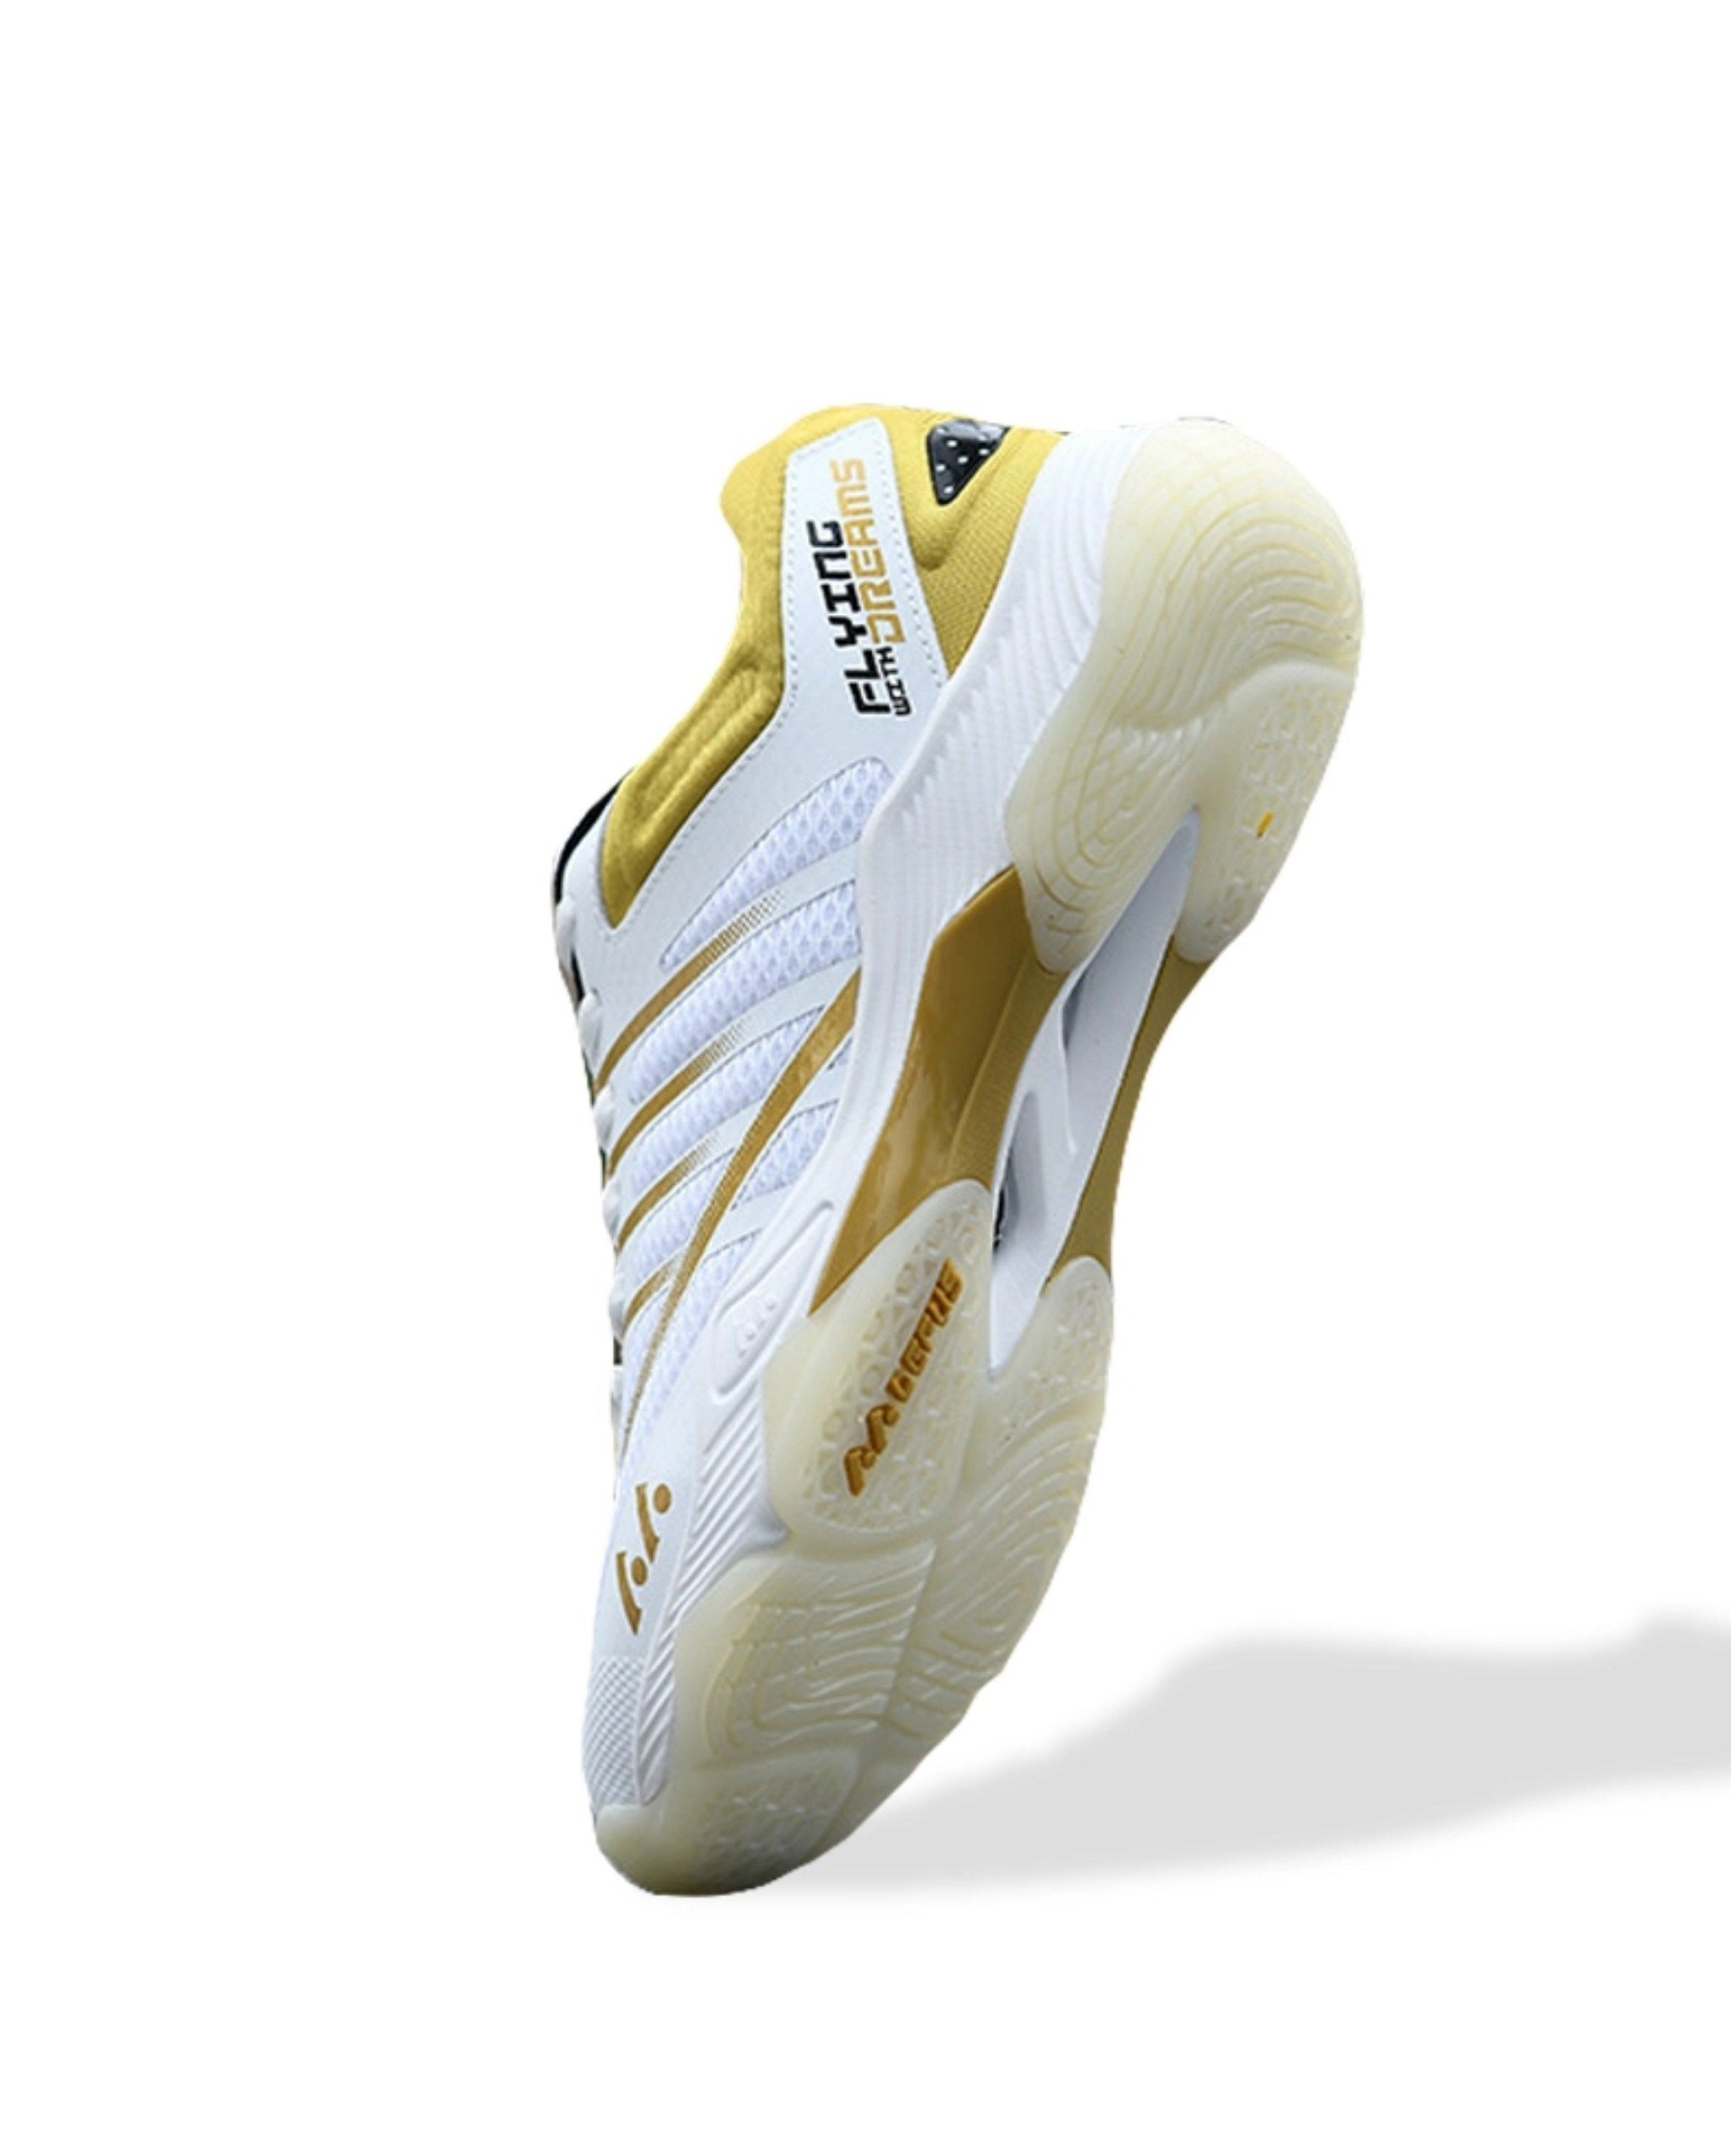 Giày bóng chuyền Lefus L026 - Trắng Vàng